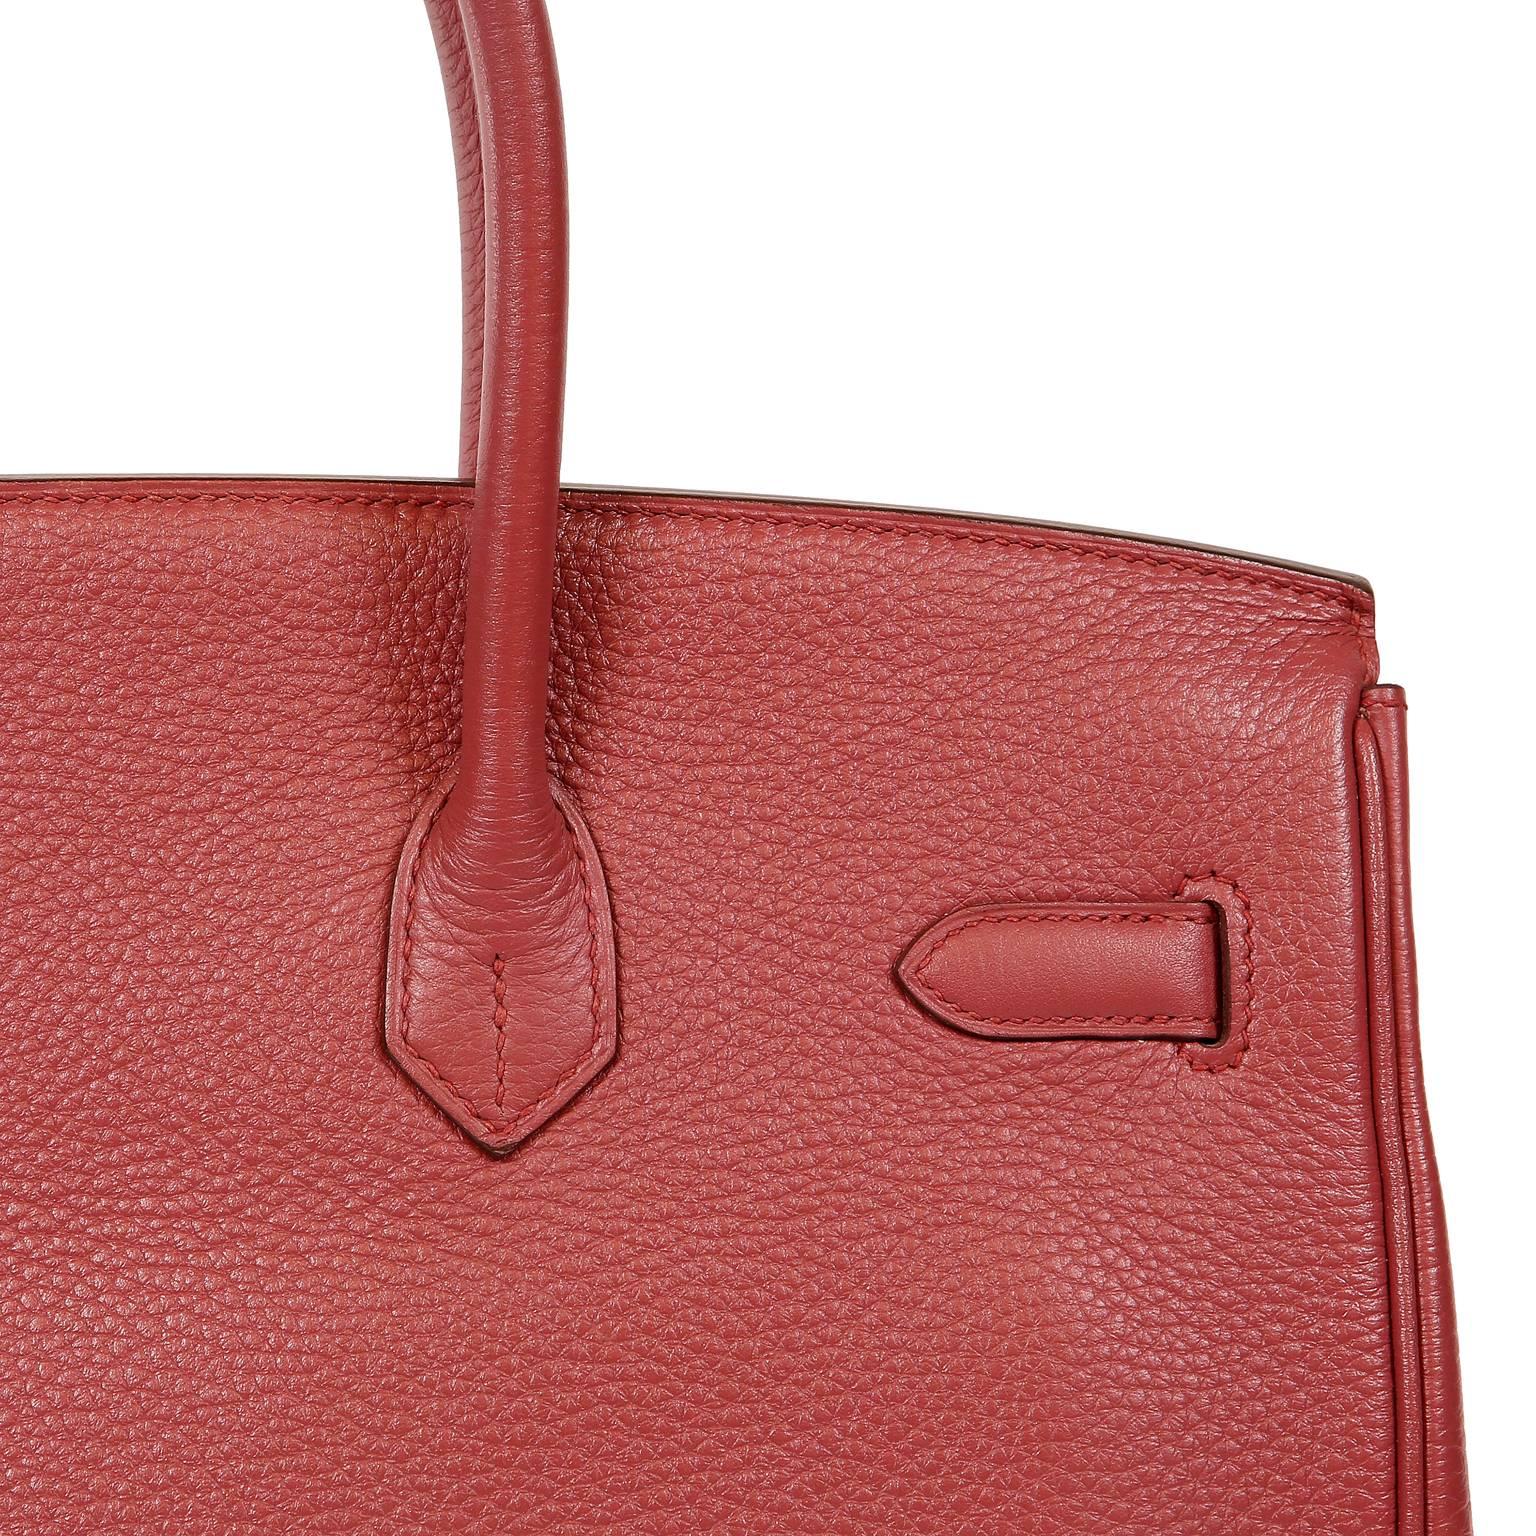 Hermès Bois de Rose Togo Leather 35 cm Birkin Bag 7